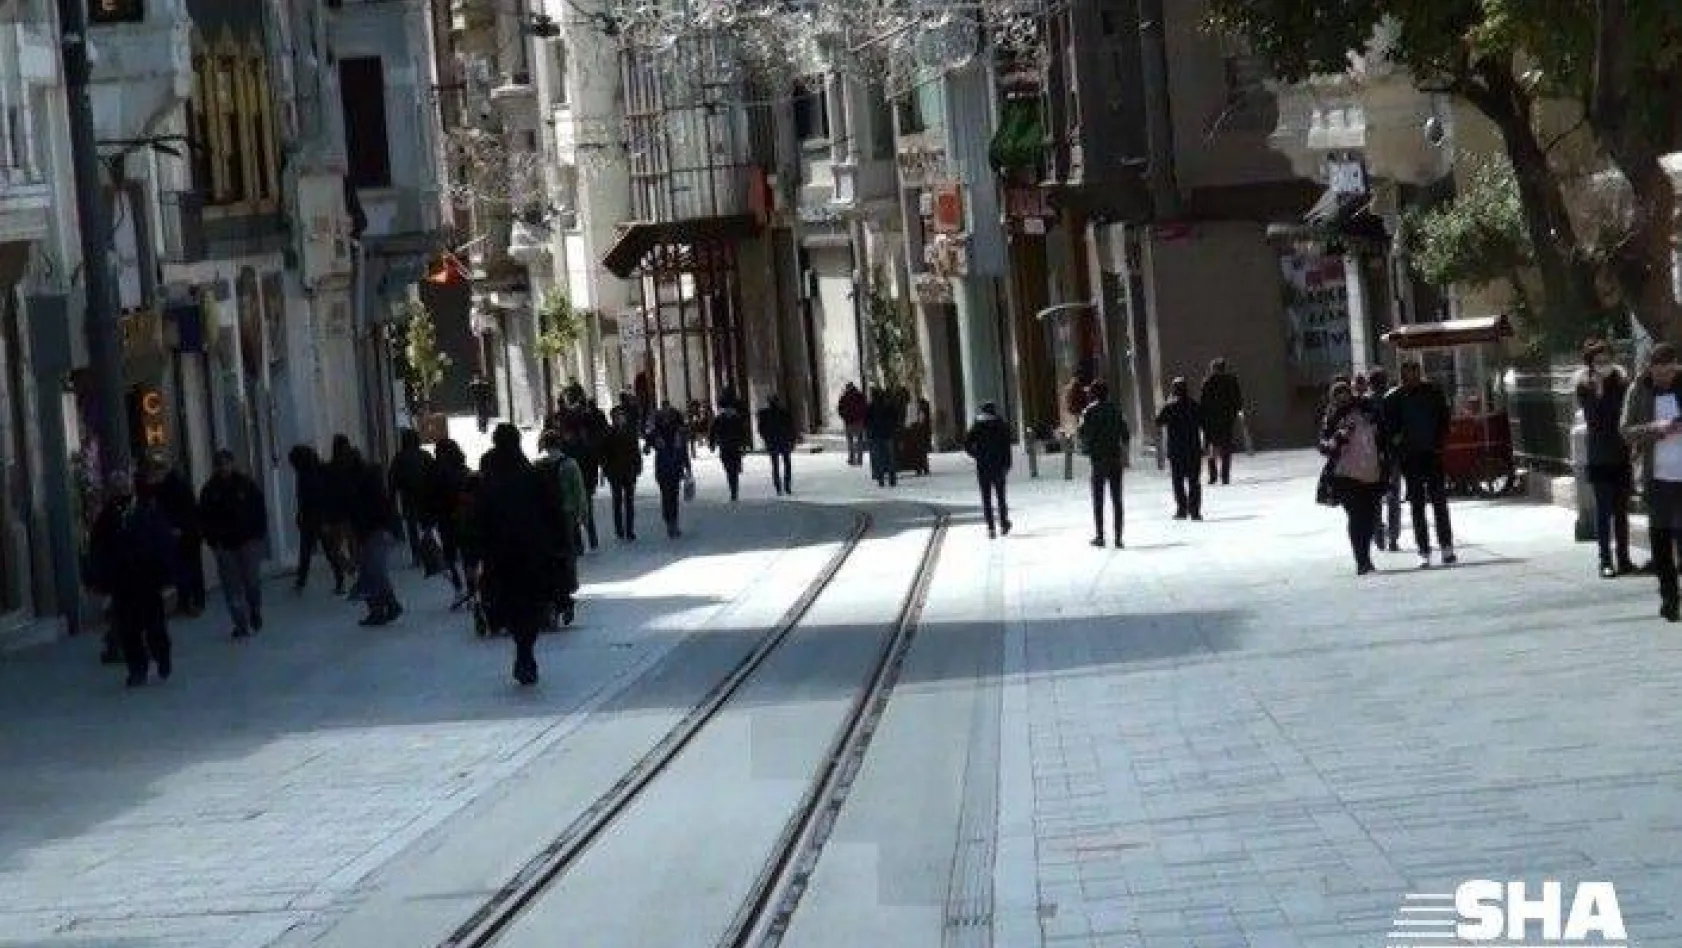 Güneşin kendini göstermesiyle Taksim'de insan hareketliliği yaşandı